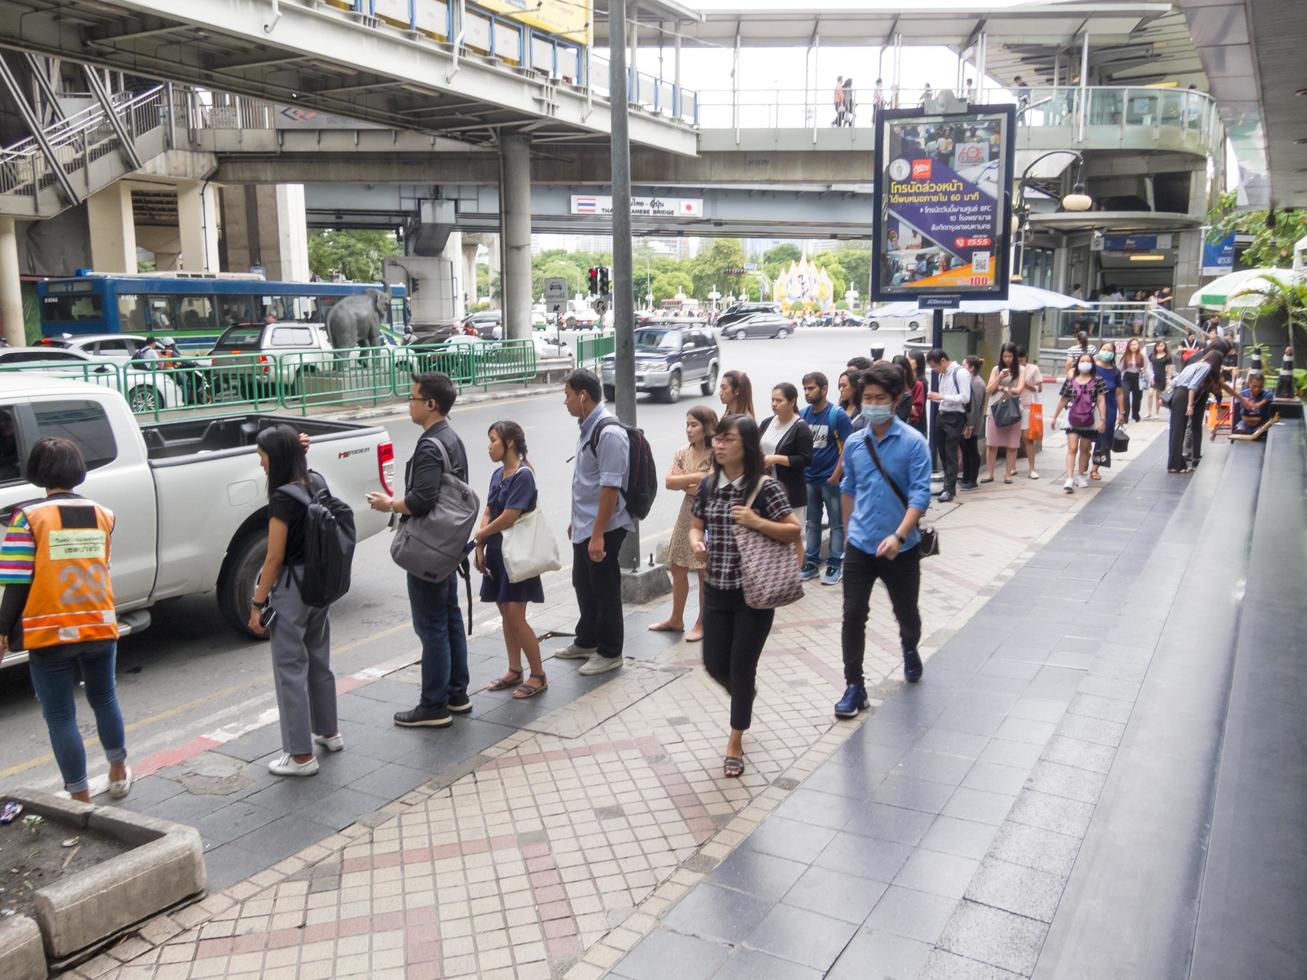 silom bangkokthailand16 de agosto de 2018 de manhã as pessoas estão caminhando para o trabalho e fazendo atividades como comprar café para comprar ou comprar bilhetes de loteria e fazer fila para uma motocicleta. foto